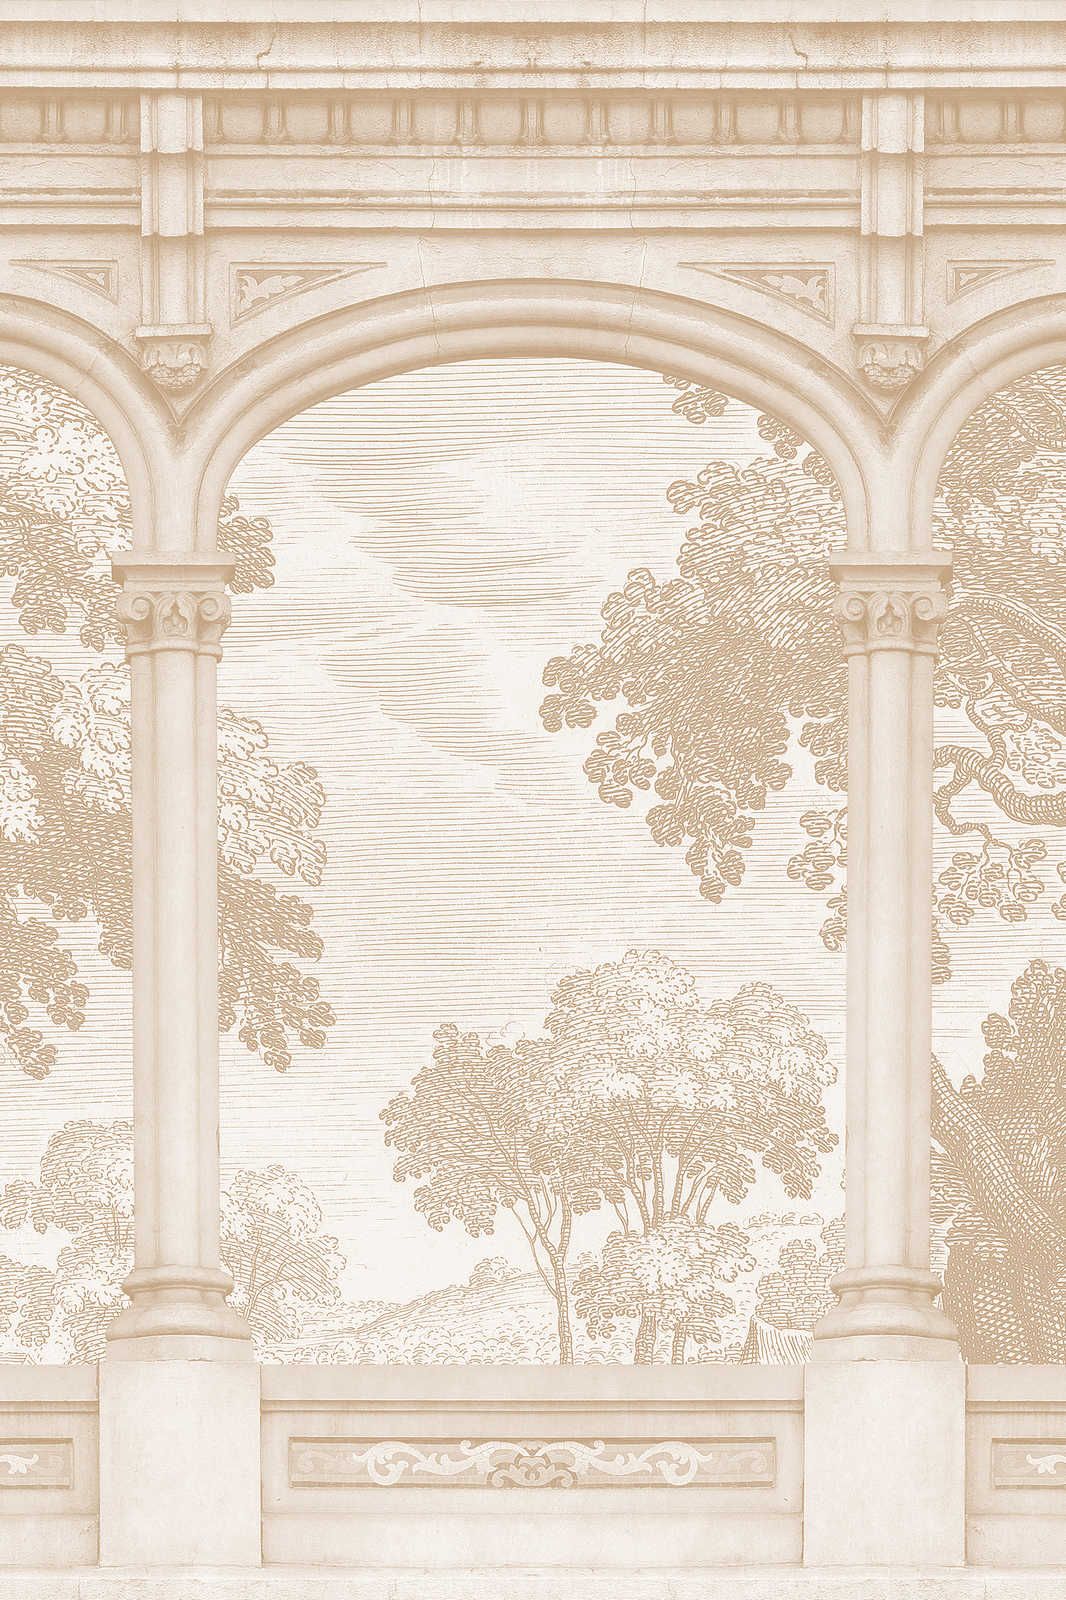             Roma 2 - Tela beige con disegno storico e finestra ad arco tondo - 0,90 m x 0,60 m
        